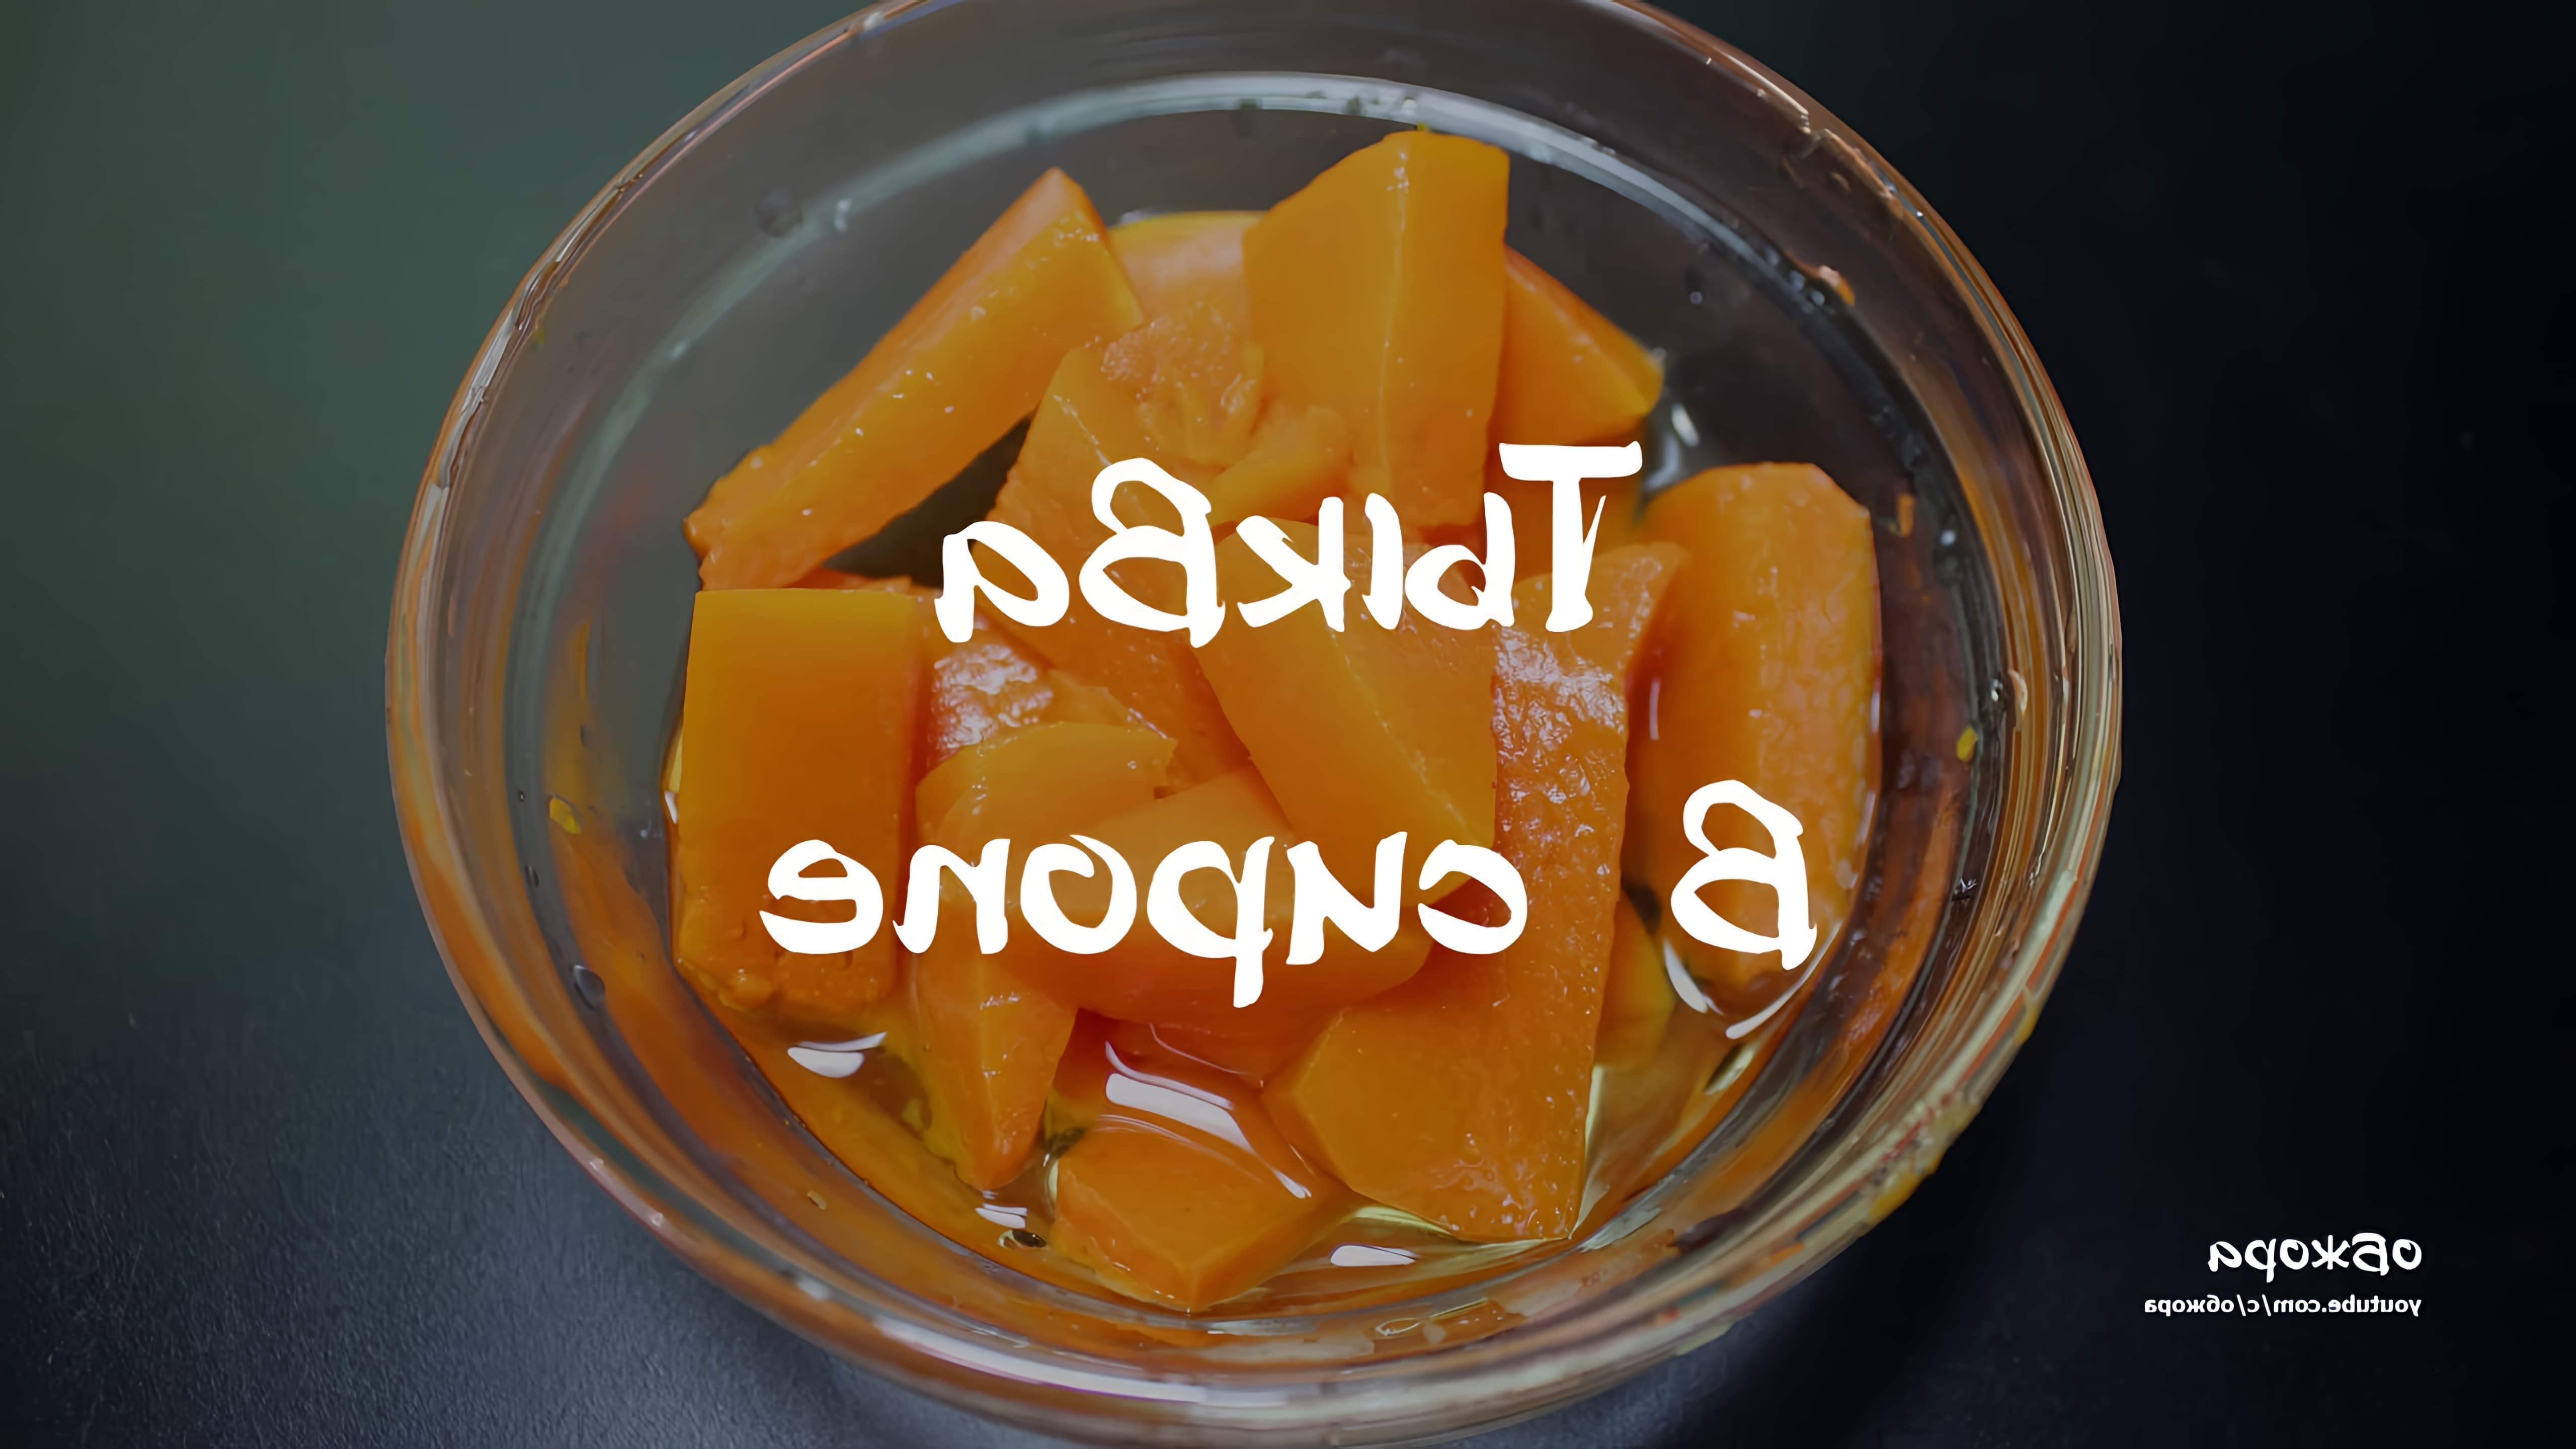 В этом видео демонстрируется рецепт приготовления тыквы в сиропе